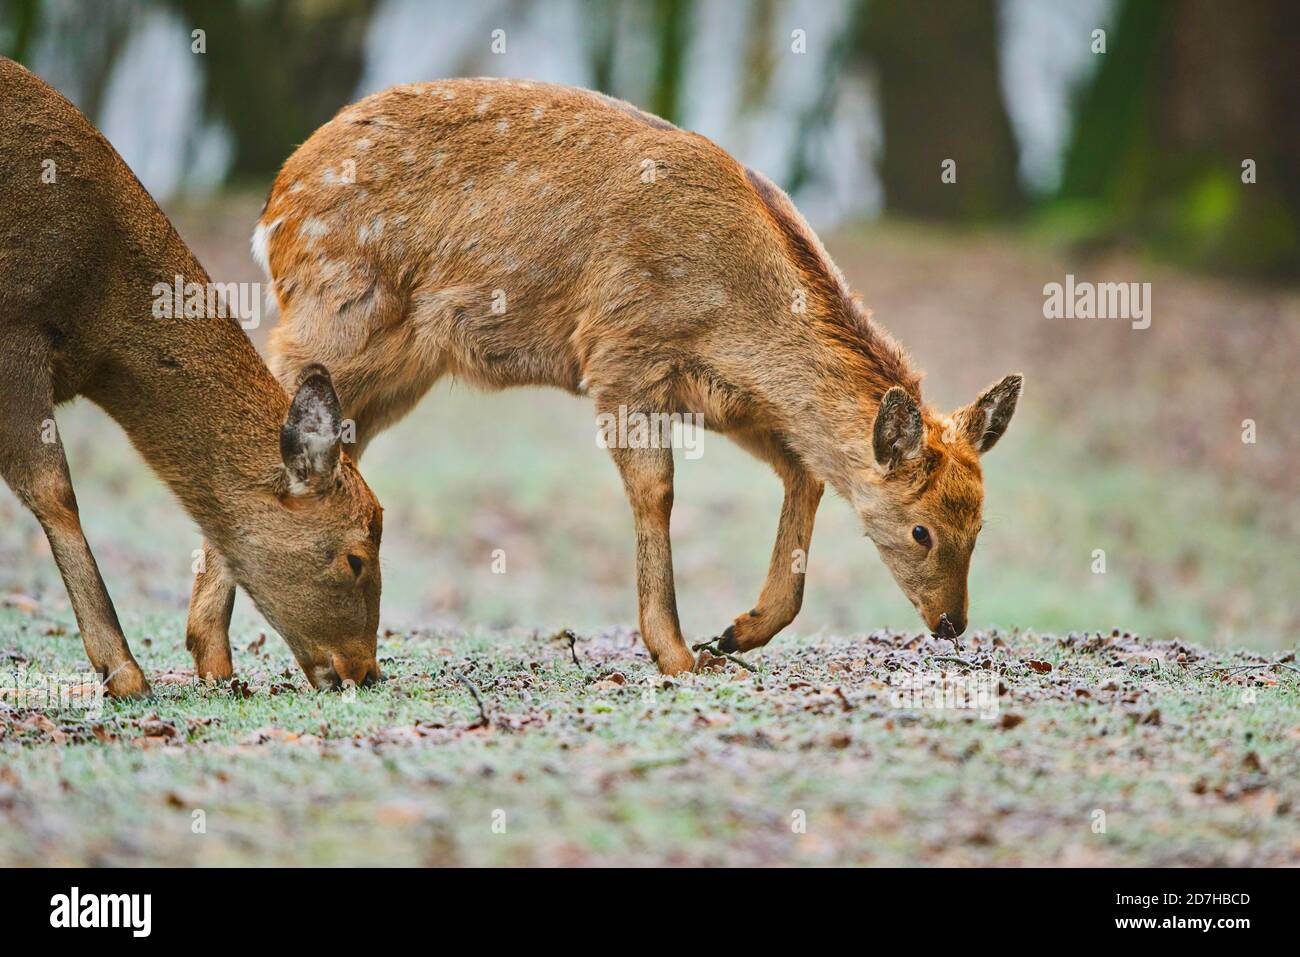 Sika deer, Tame sika deer, Tame deer (Cervus nippon), juvenile Tame deer walking on frozen ground, side view, Germany Stock Photo